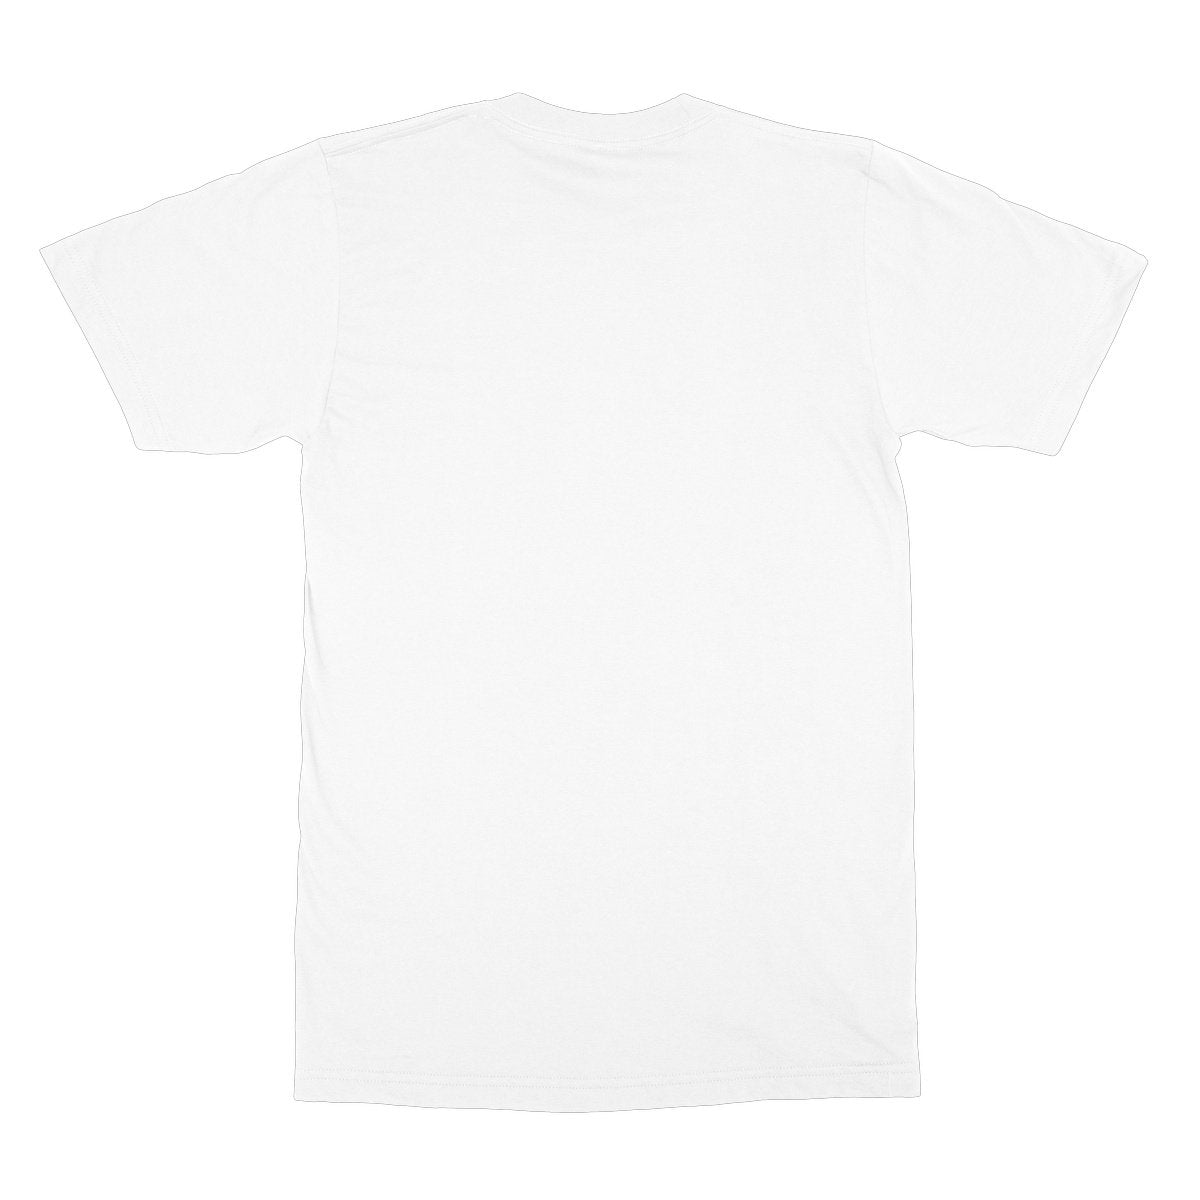 Unisex Softstyle T-Shirt - 'Dog Tired'